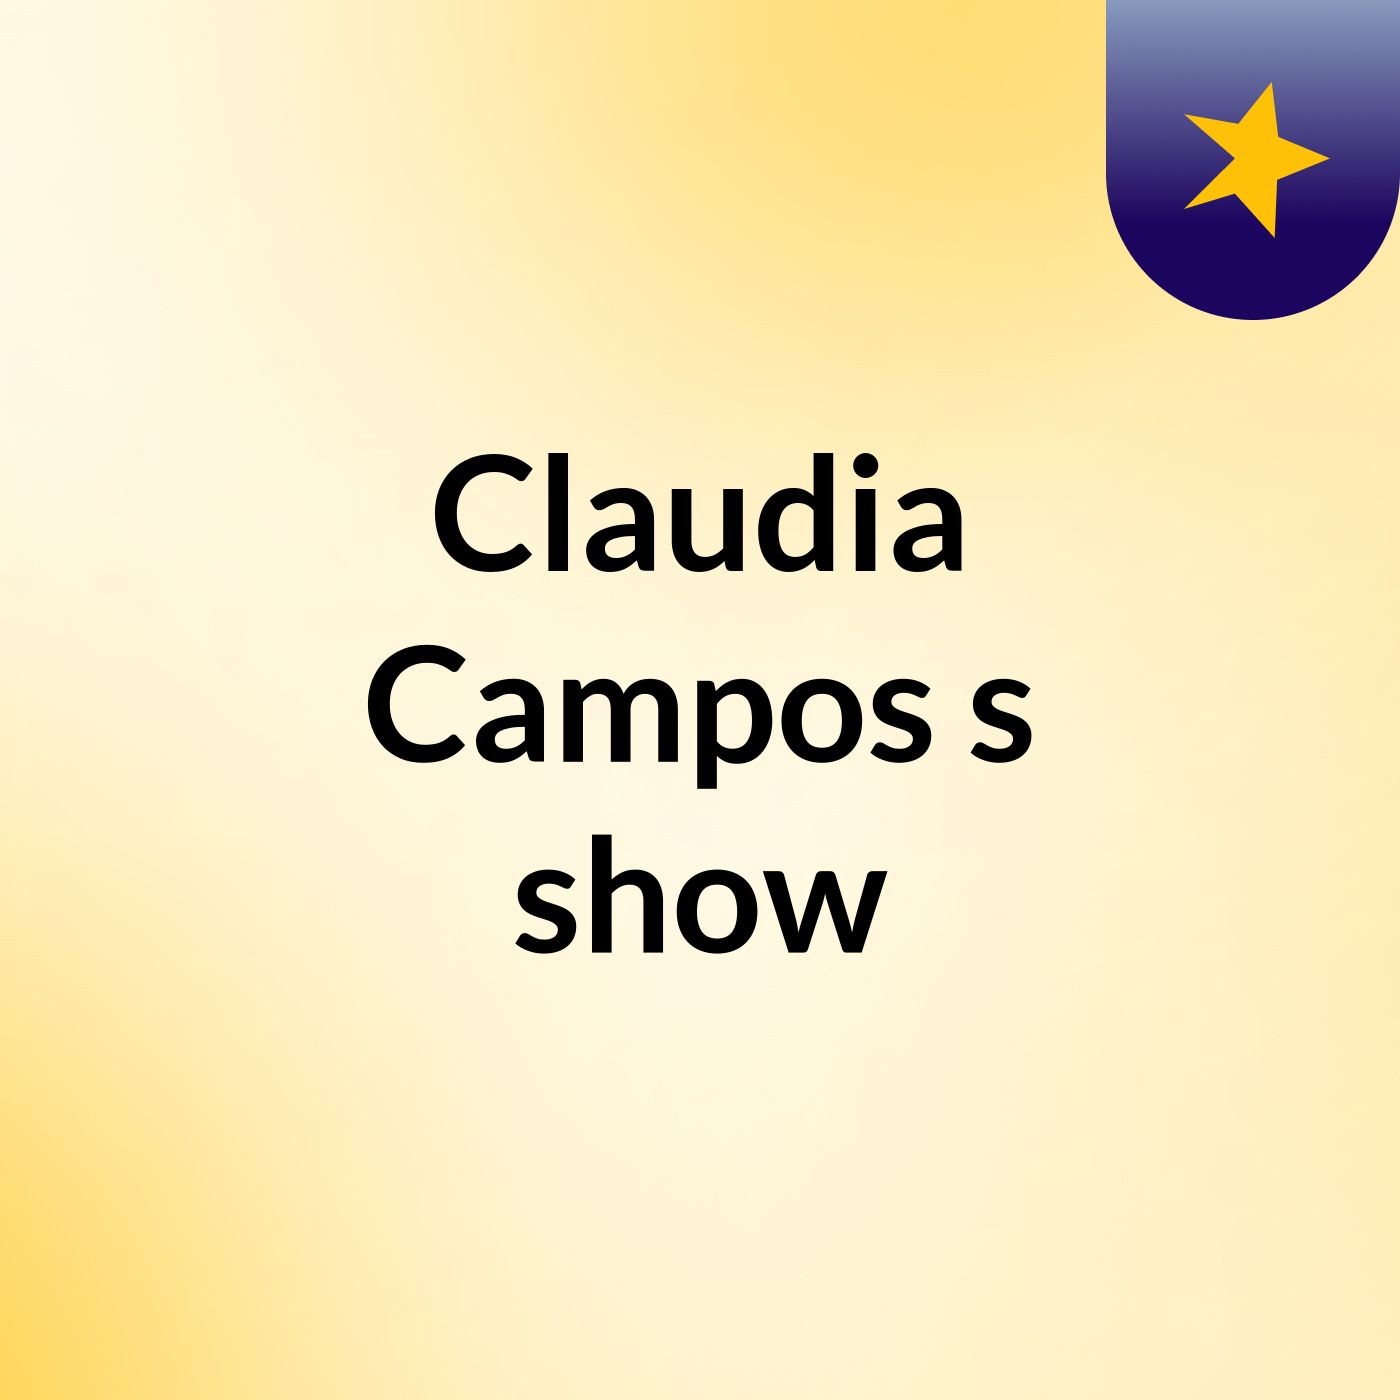 Claudia Campos's show